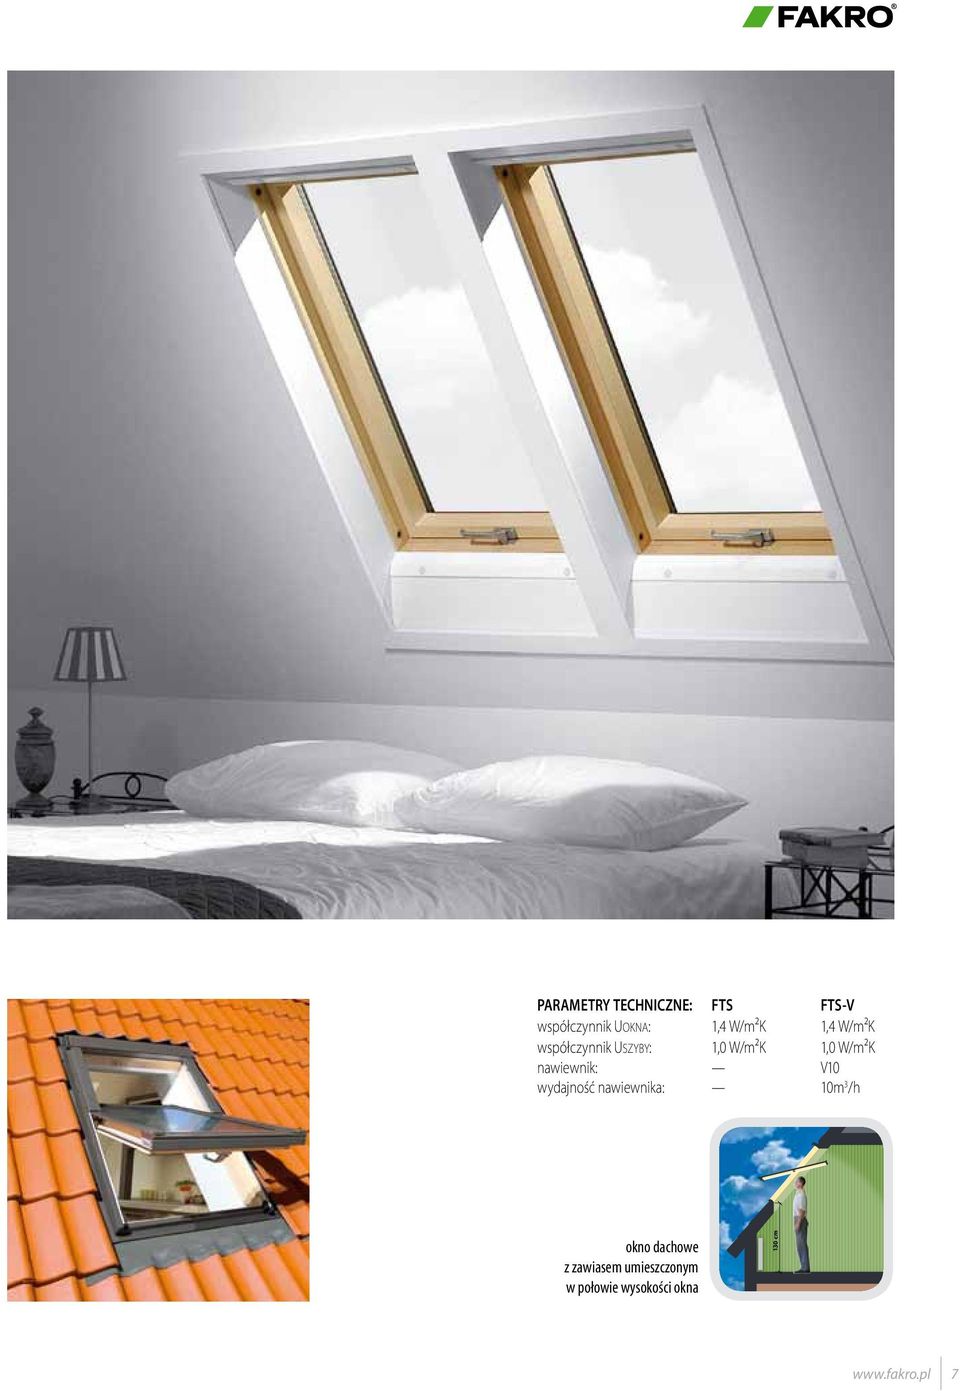 W/m²K FTS-V 1,4 W/m²K 1,0 W/m²K V10 10m 3 /h okno dachowe z